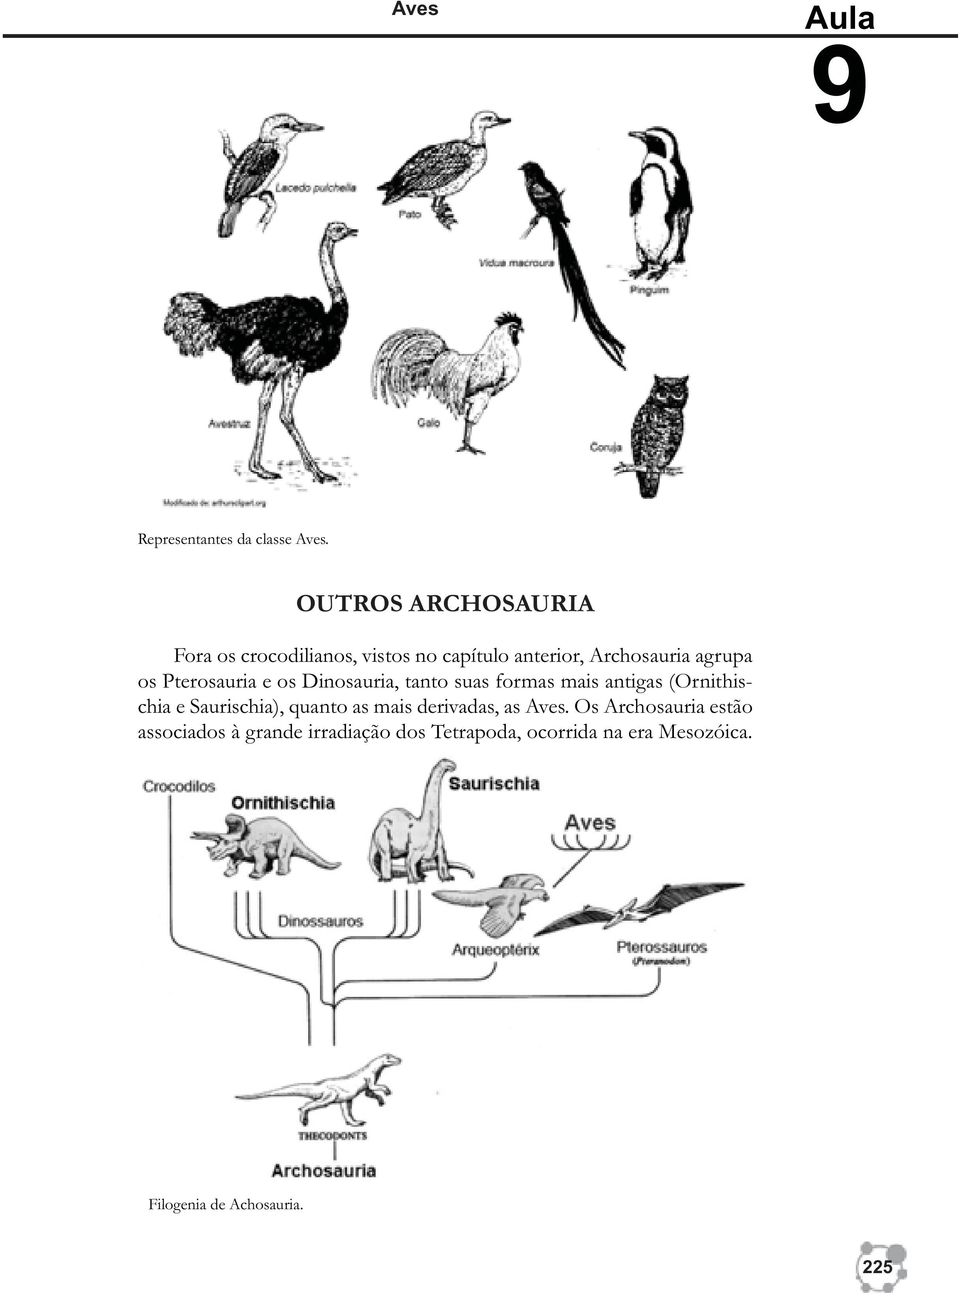 Pterosauria e os Dinosauria, tanto suas formas mais antigas (Ornithischia e Saurischia),